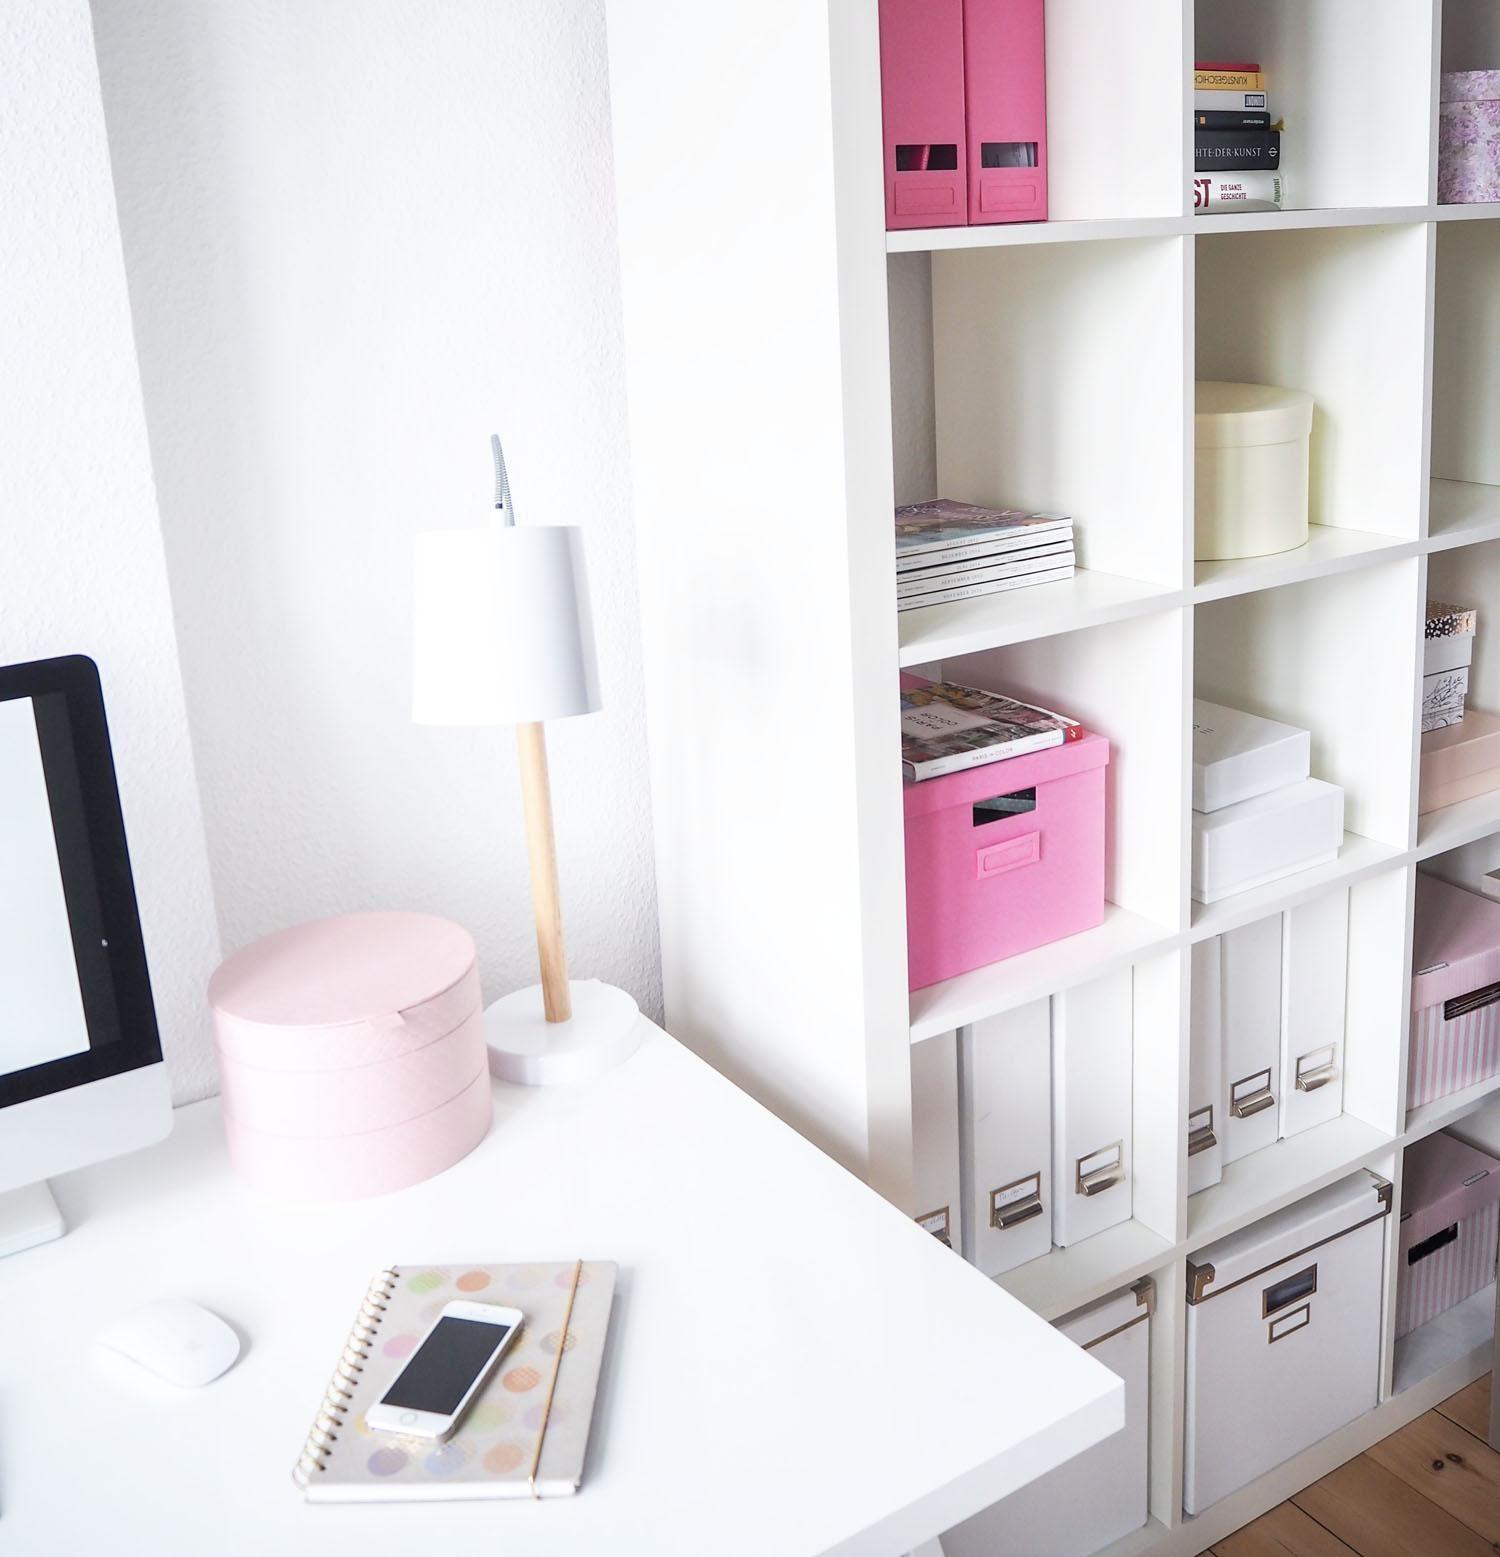 office.
#interior #pink #schreibtisch